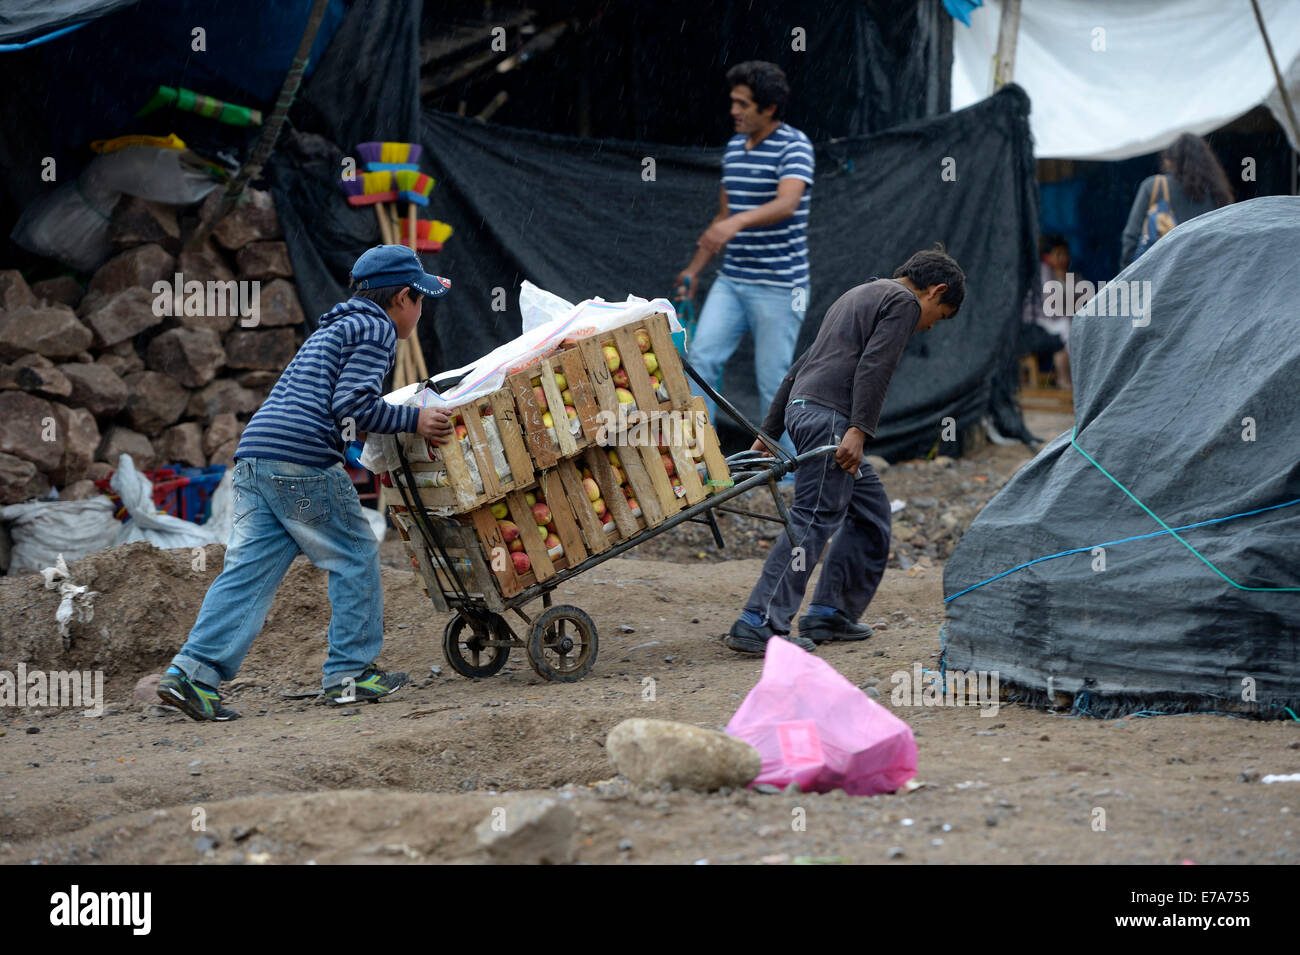 Kinderarbeit, zwei jungen arbeitet als Träger an einen Markt, Ayacucho, Ayacucho Region, Peru Stockfoto